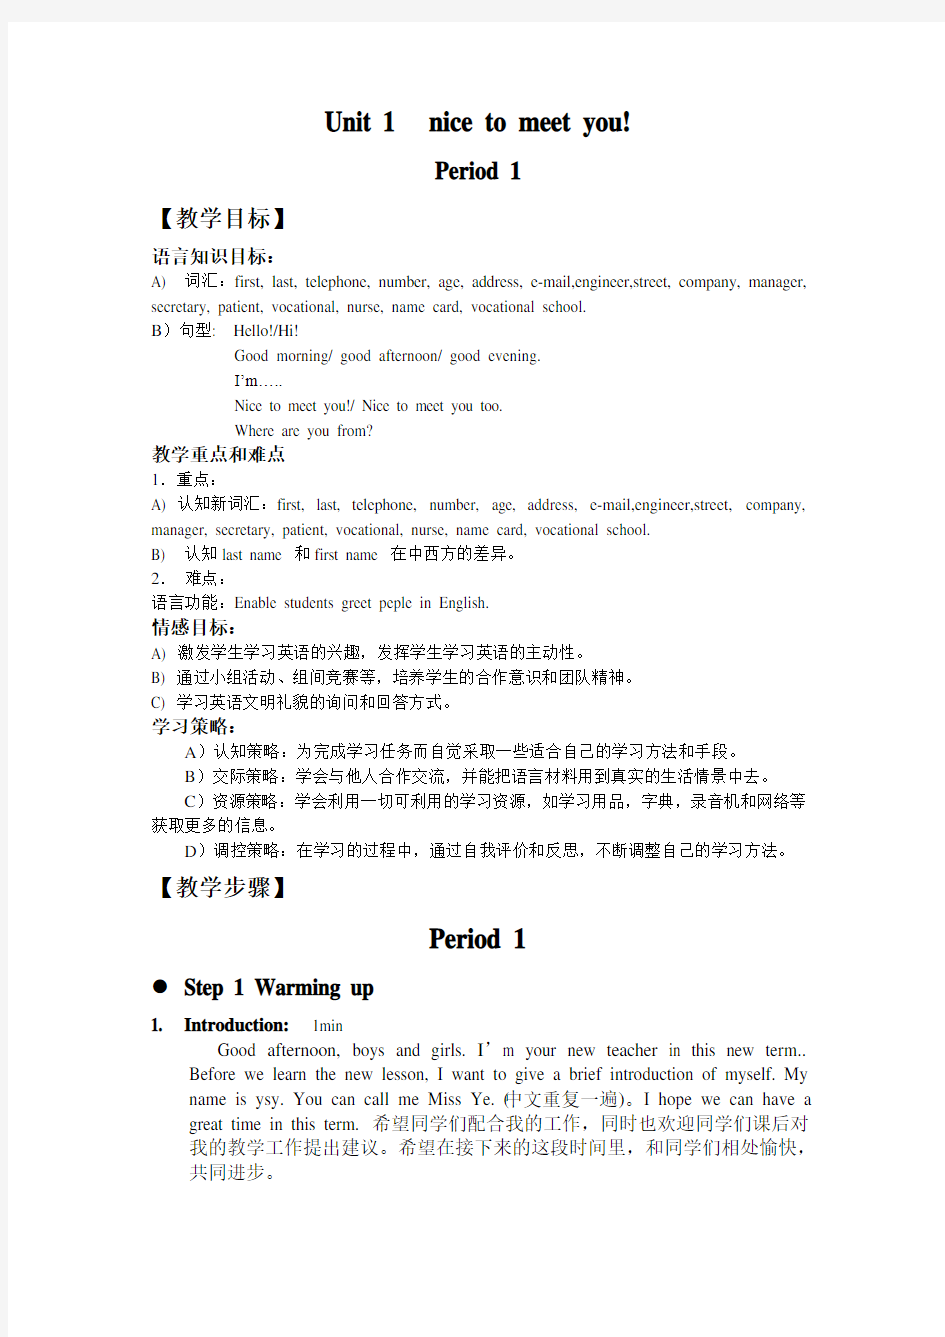 (完整版)英语基础模块上册unit1教案